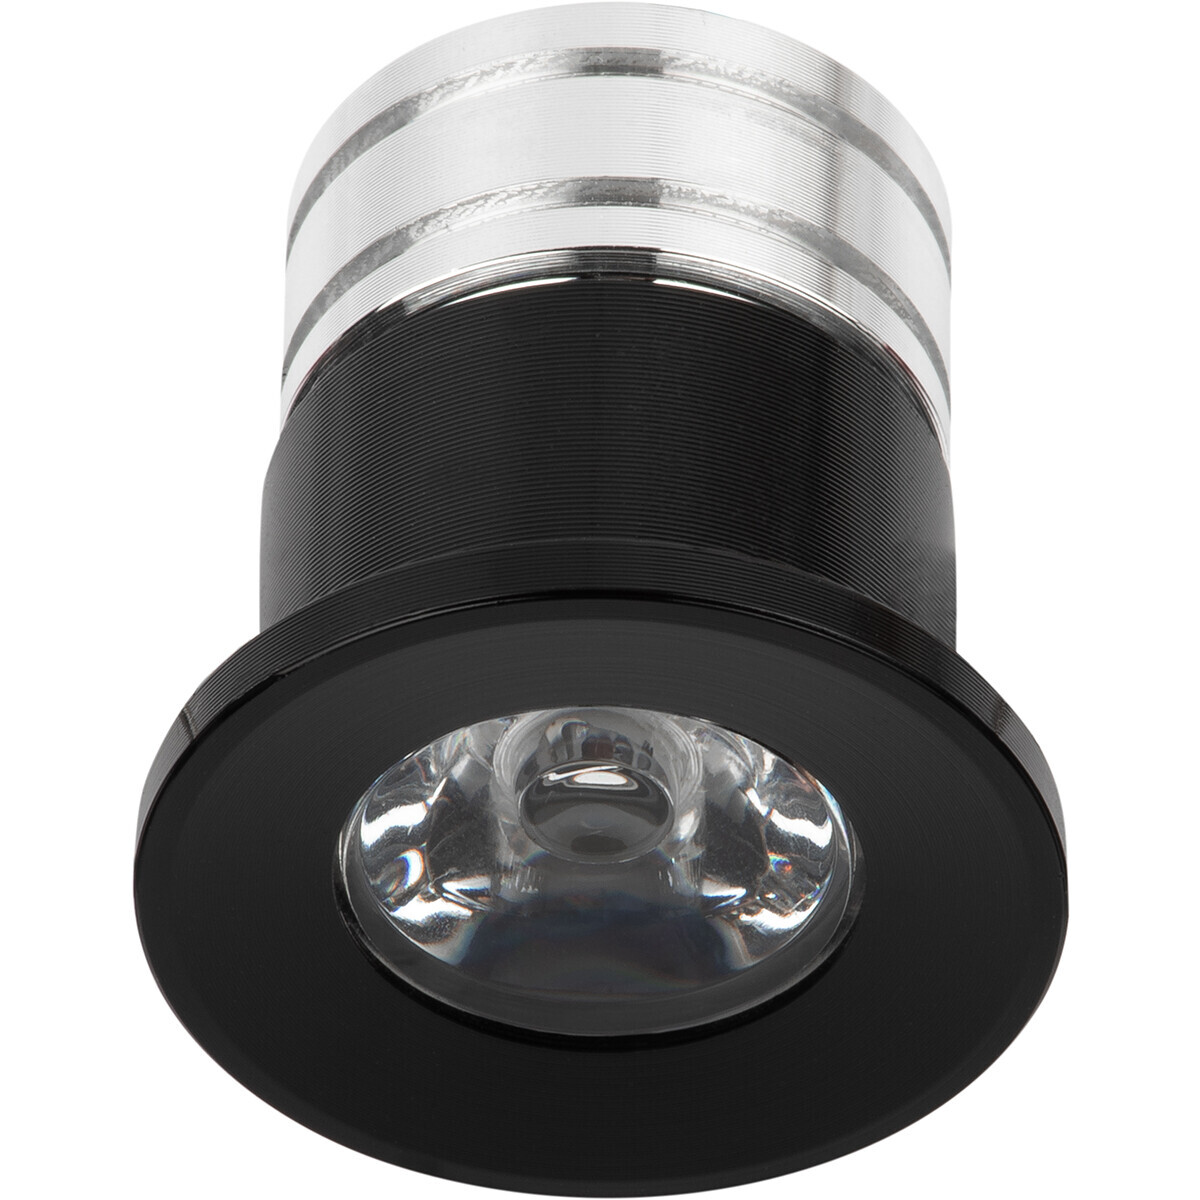 Velvalux LED Veranda Spot Verlichting - 3W - Natuurlijk Wit 4000K - Inbouw - Rond - Mat Zwart - Aluminium - Ø31mm